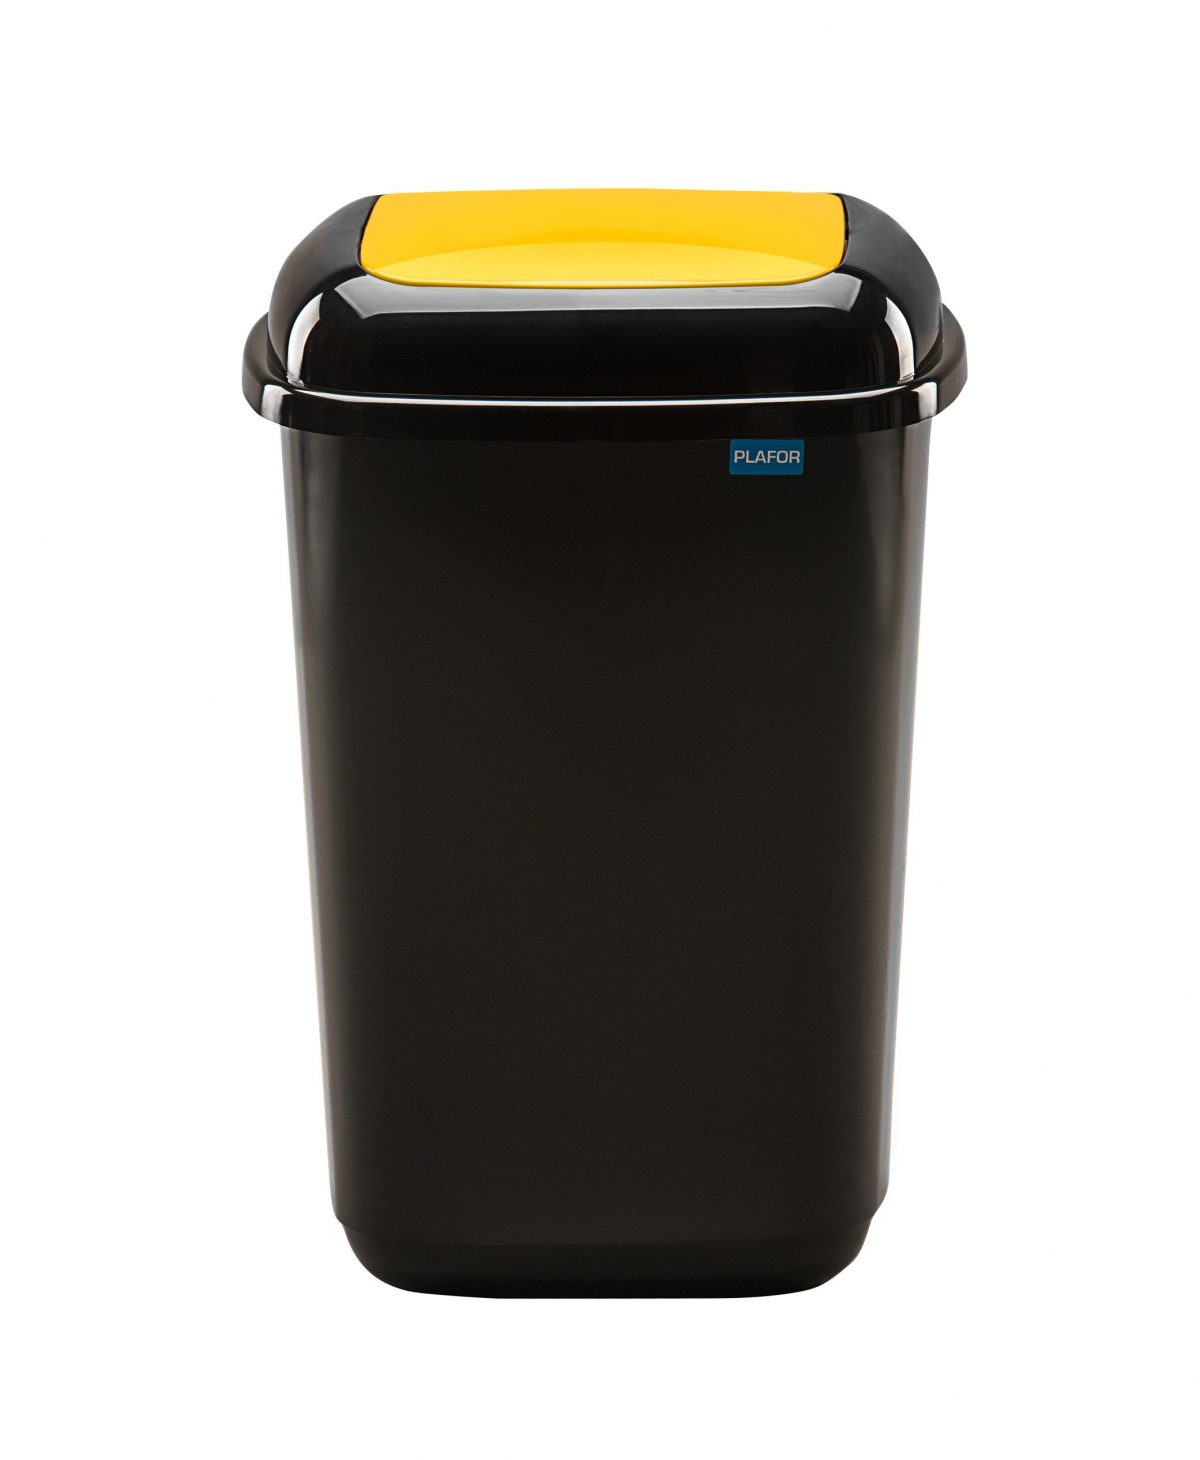 Мусорный бак PLAFOR Quatro bin seperate collection 657-01 (12л), черный с желтой плавающей крышкой